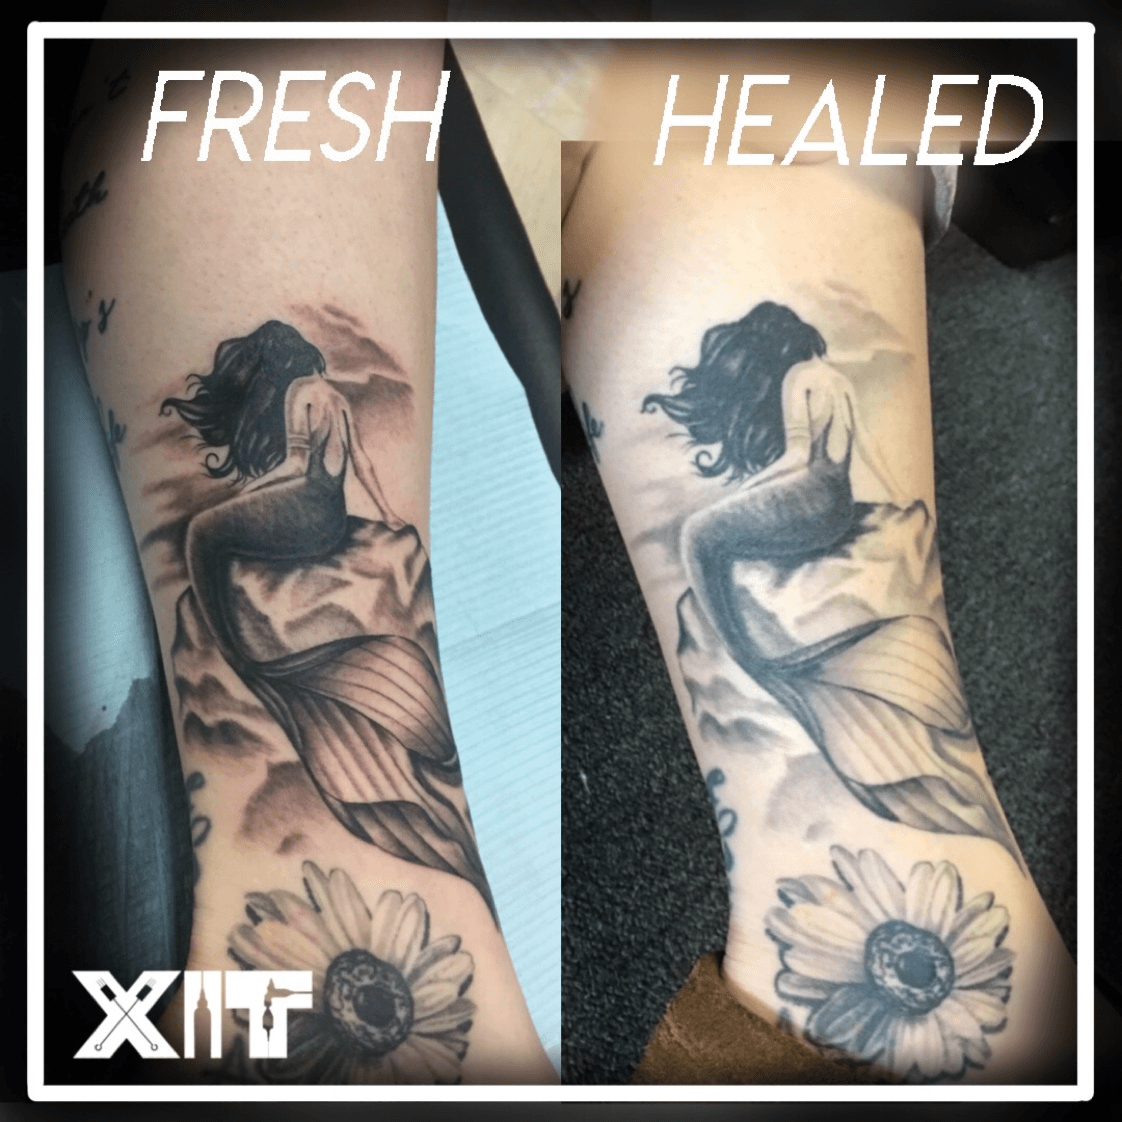 Fresh vs healed